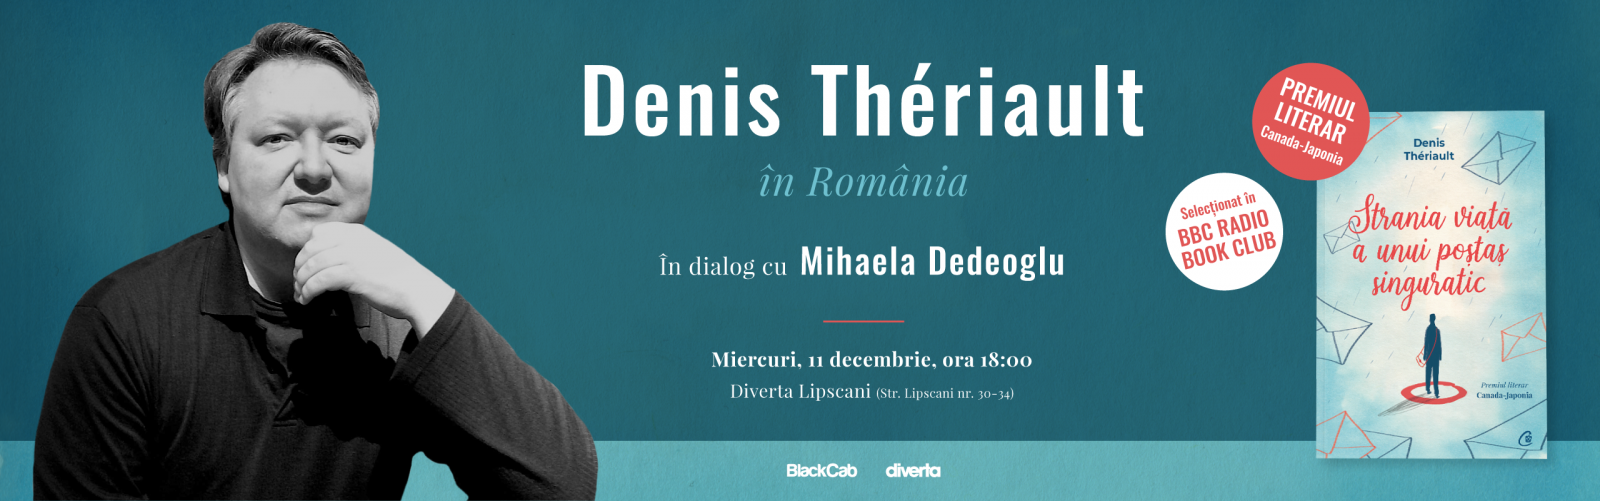 Unul dintre cei mai premiați scriitori canadieni, Denis Thériault, vine în România pe 11 decembrie